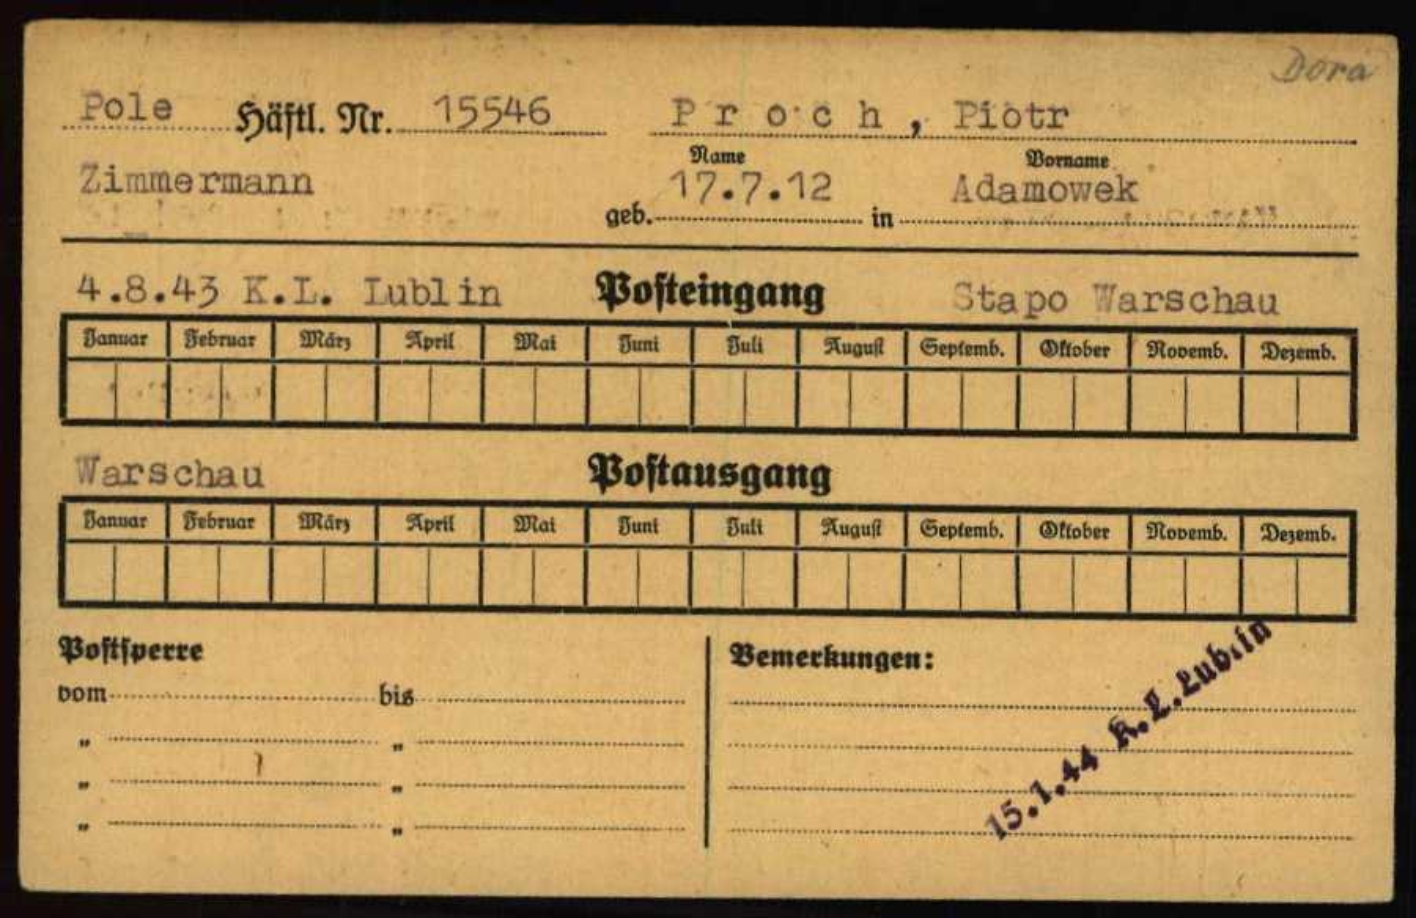 Postkontrollkarte von Piotr Proch aus dem KZ Buchenwald mit dem Hinweis auf seine Überstellung nach Dora (oben rechts)